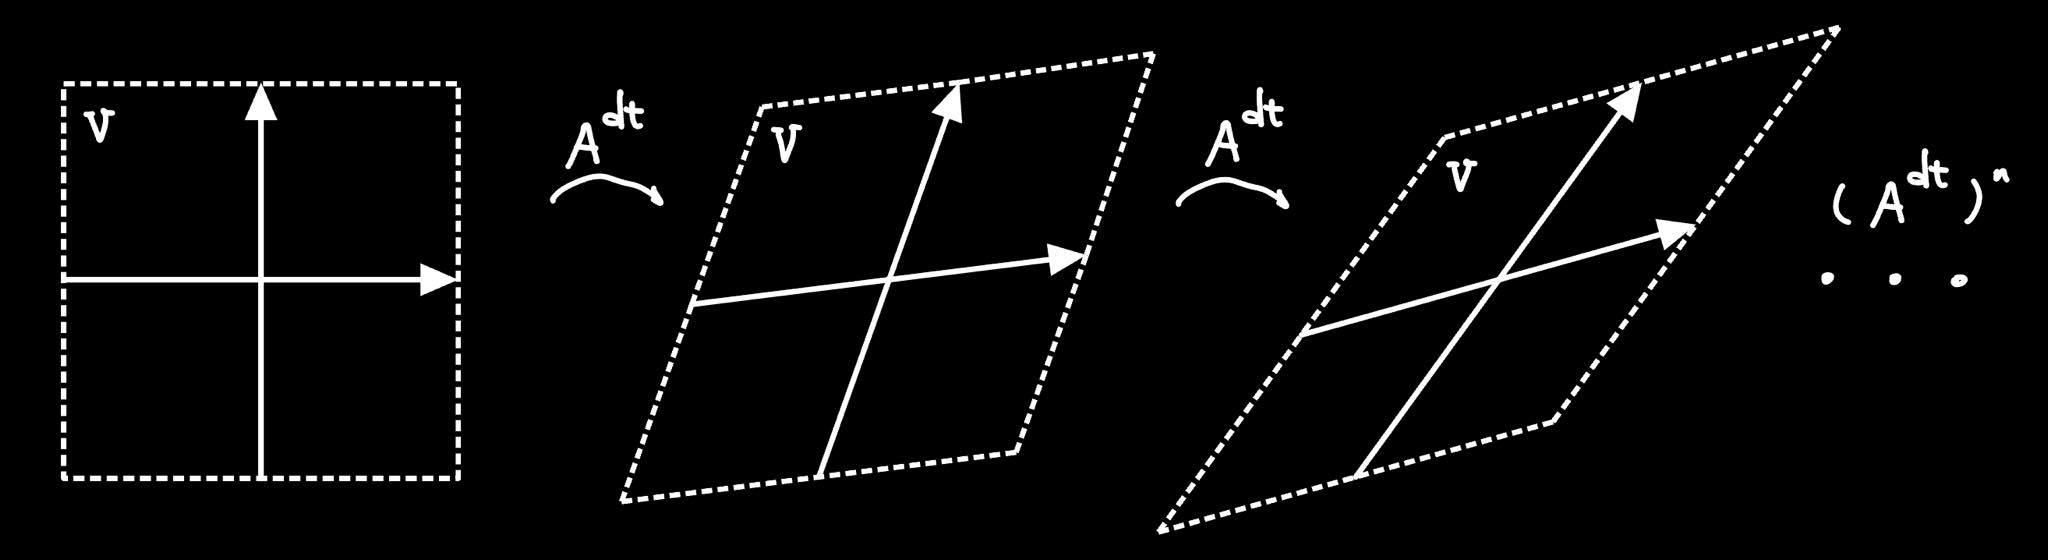 A^t的作用相当于重复作用无穷小变换A^dt